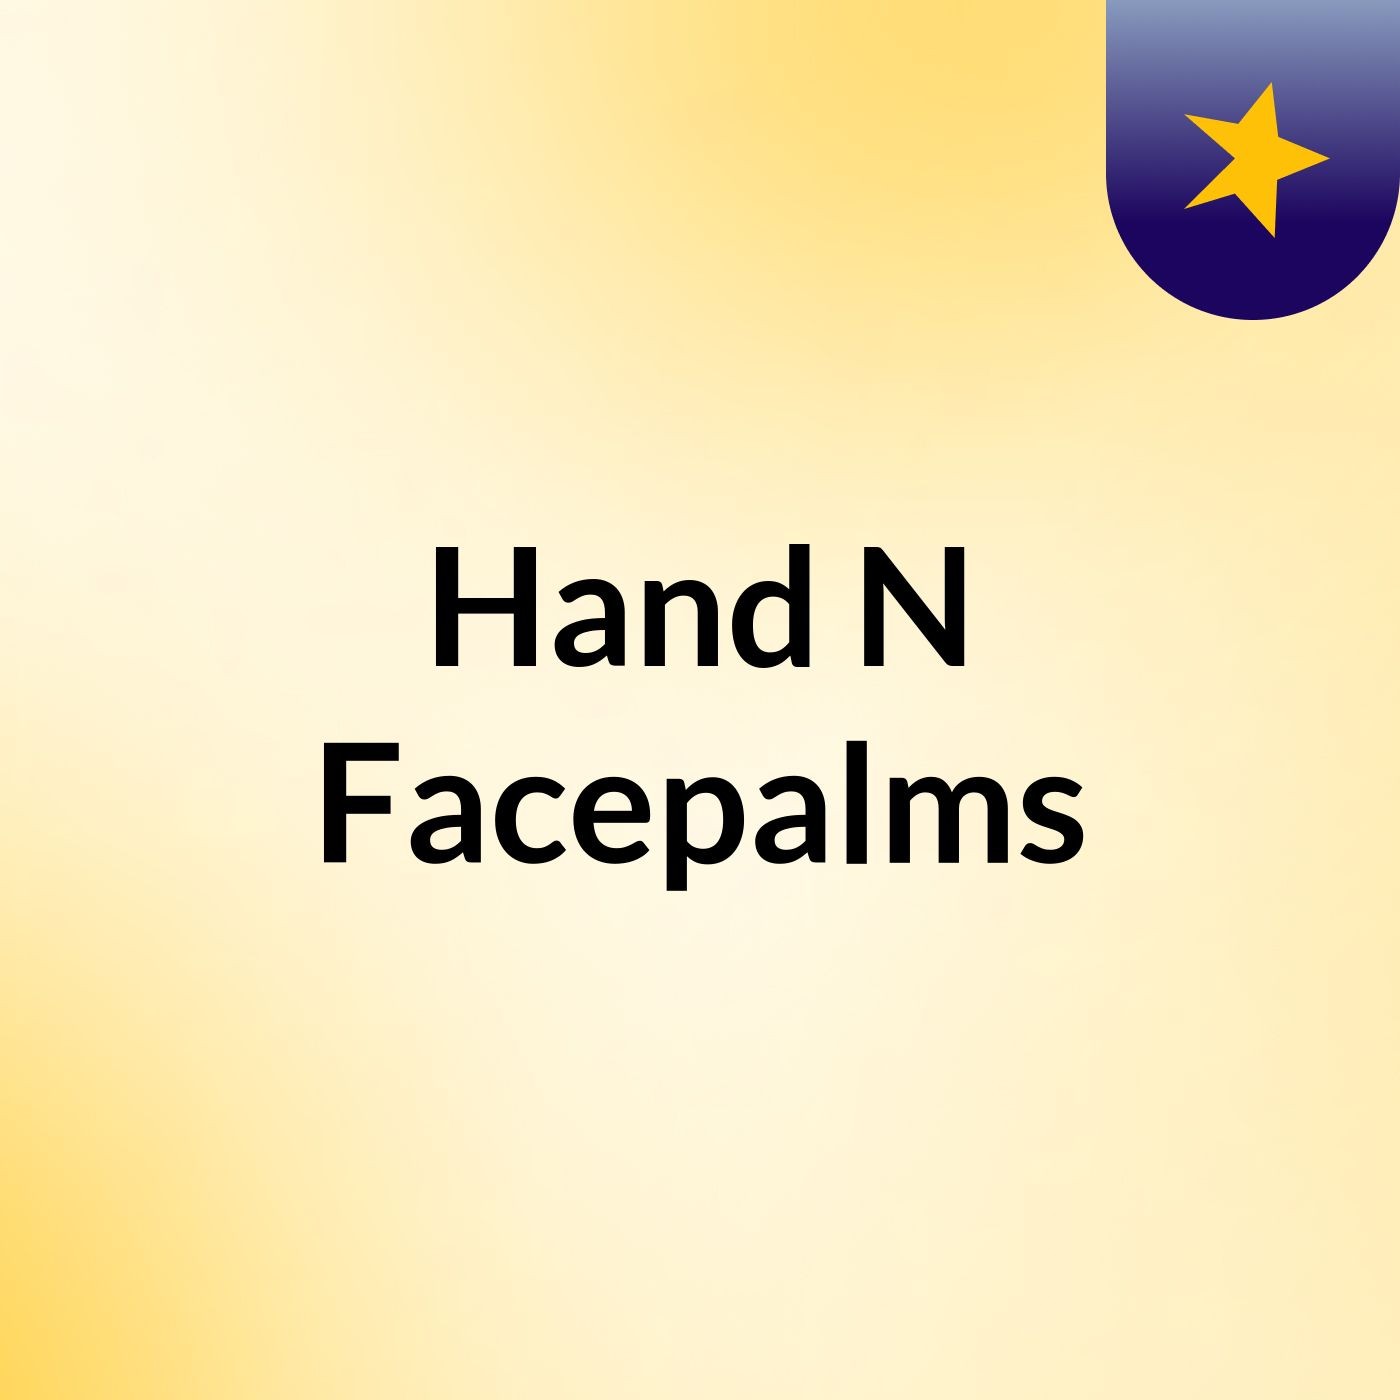 Hand N Facepalms